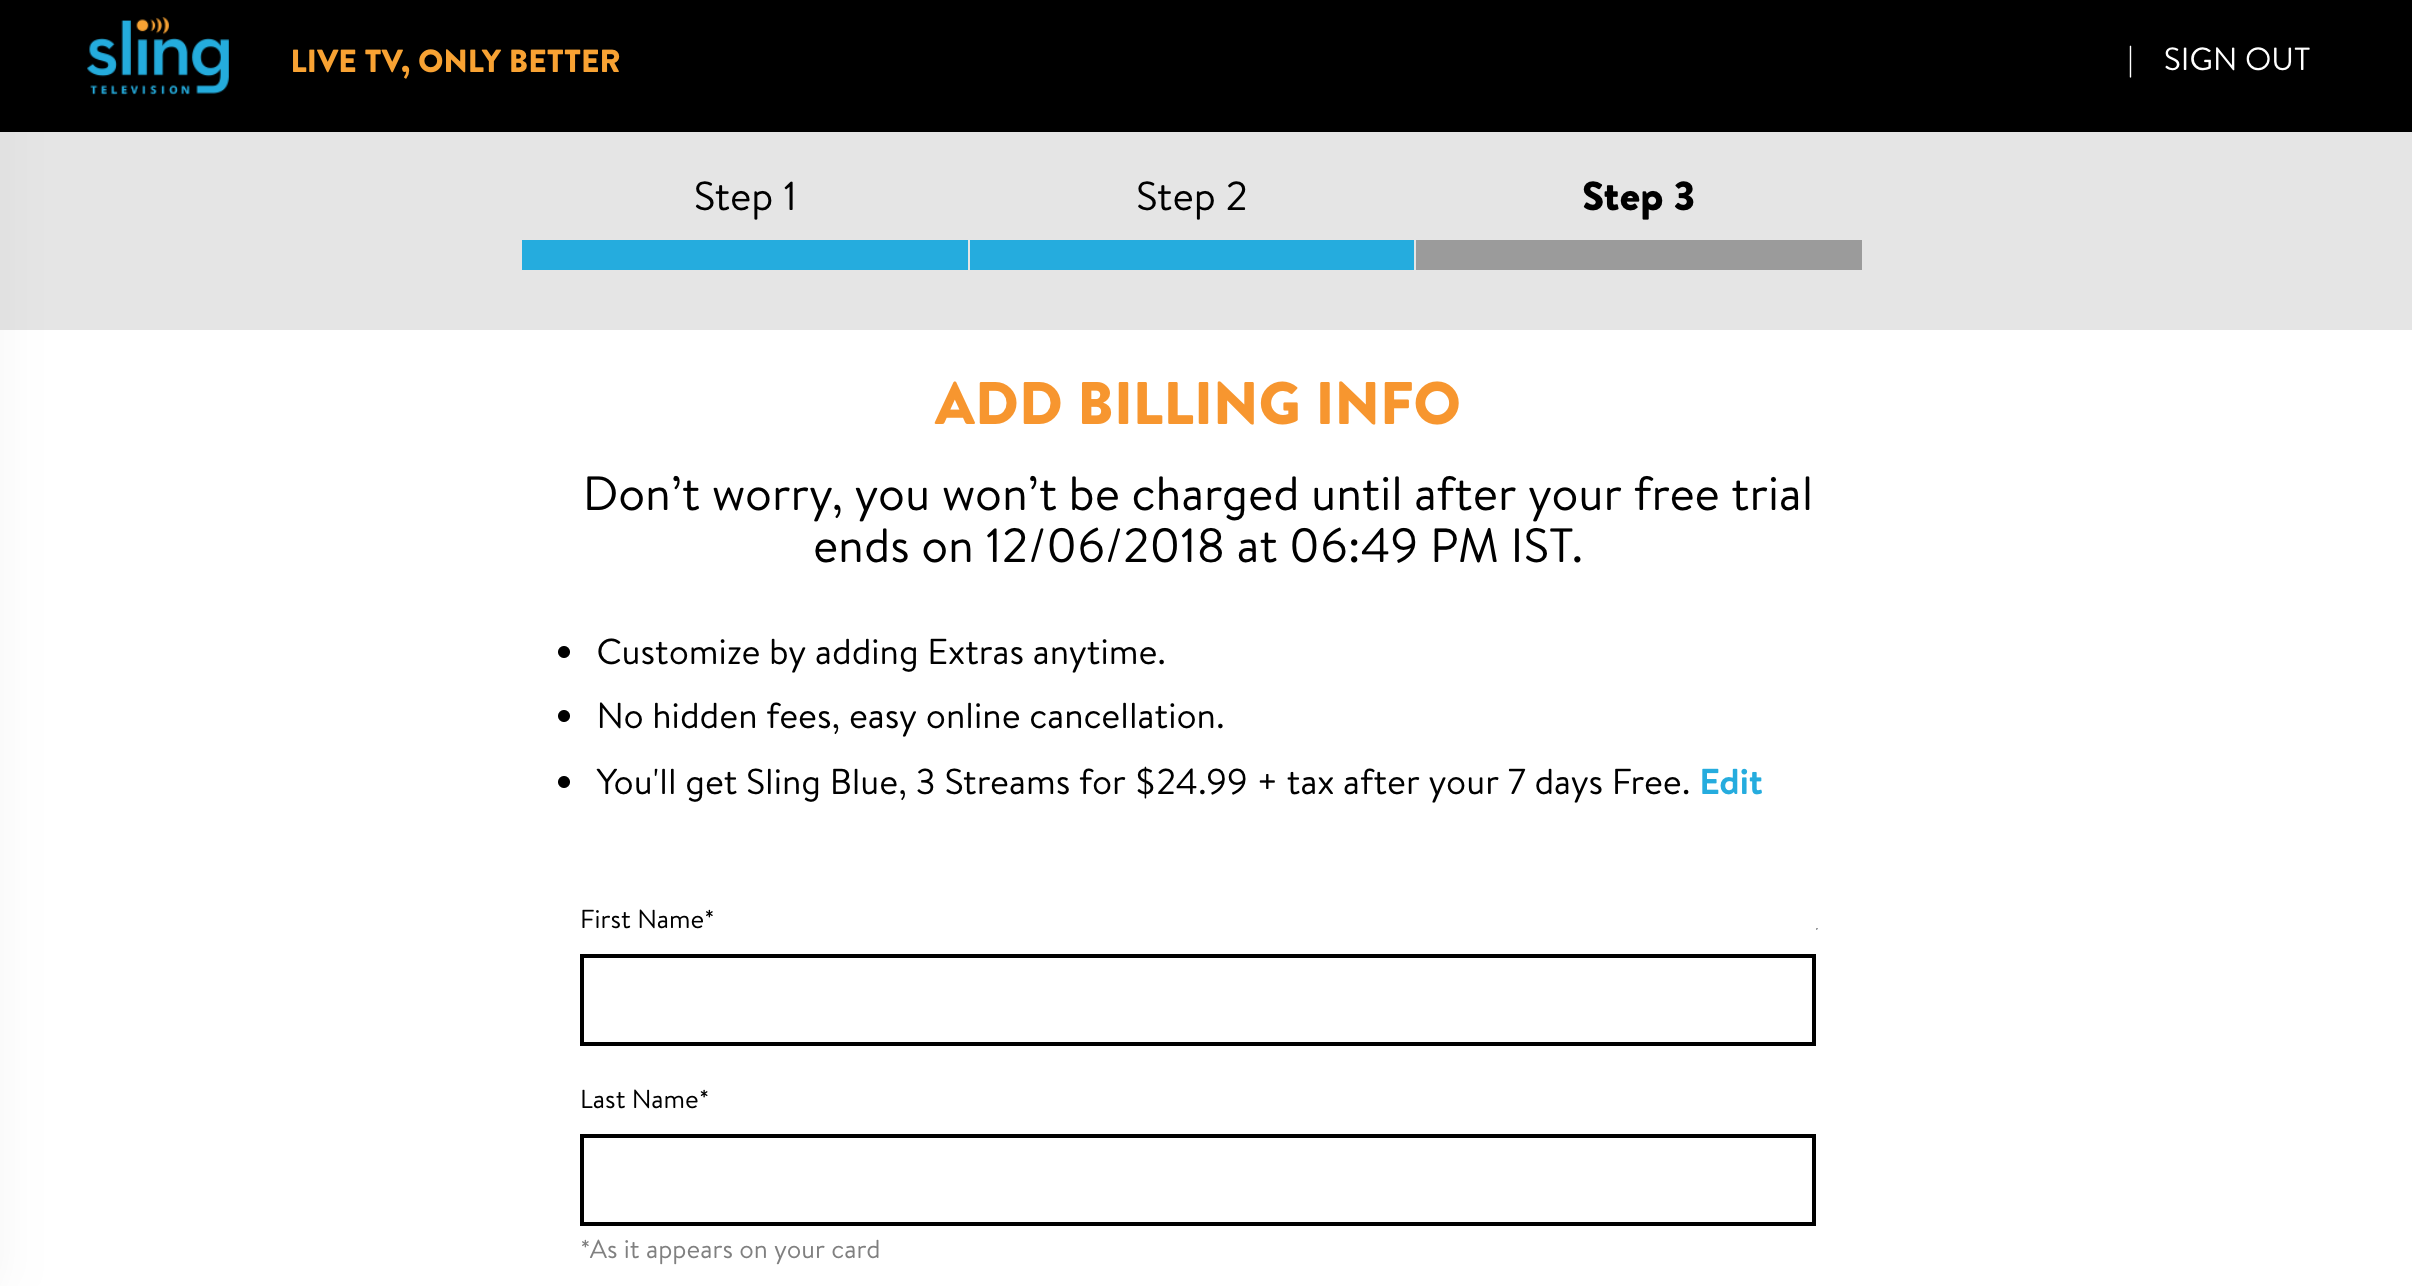 Enter billing information